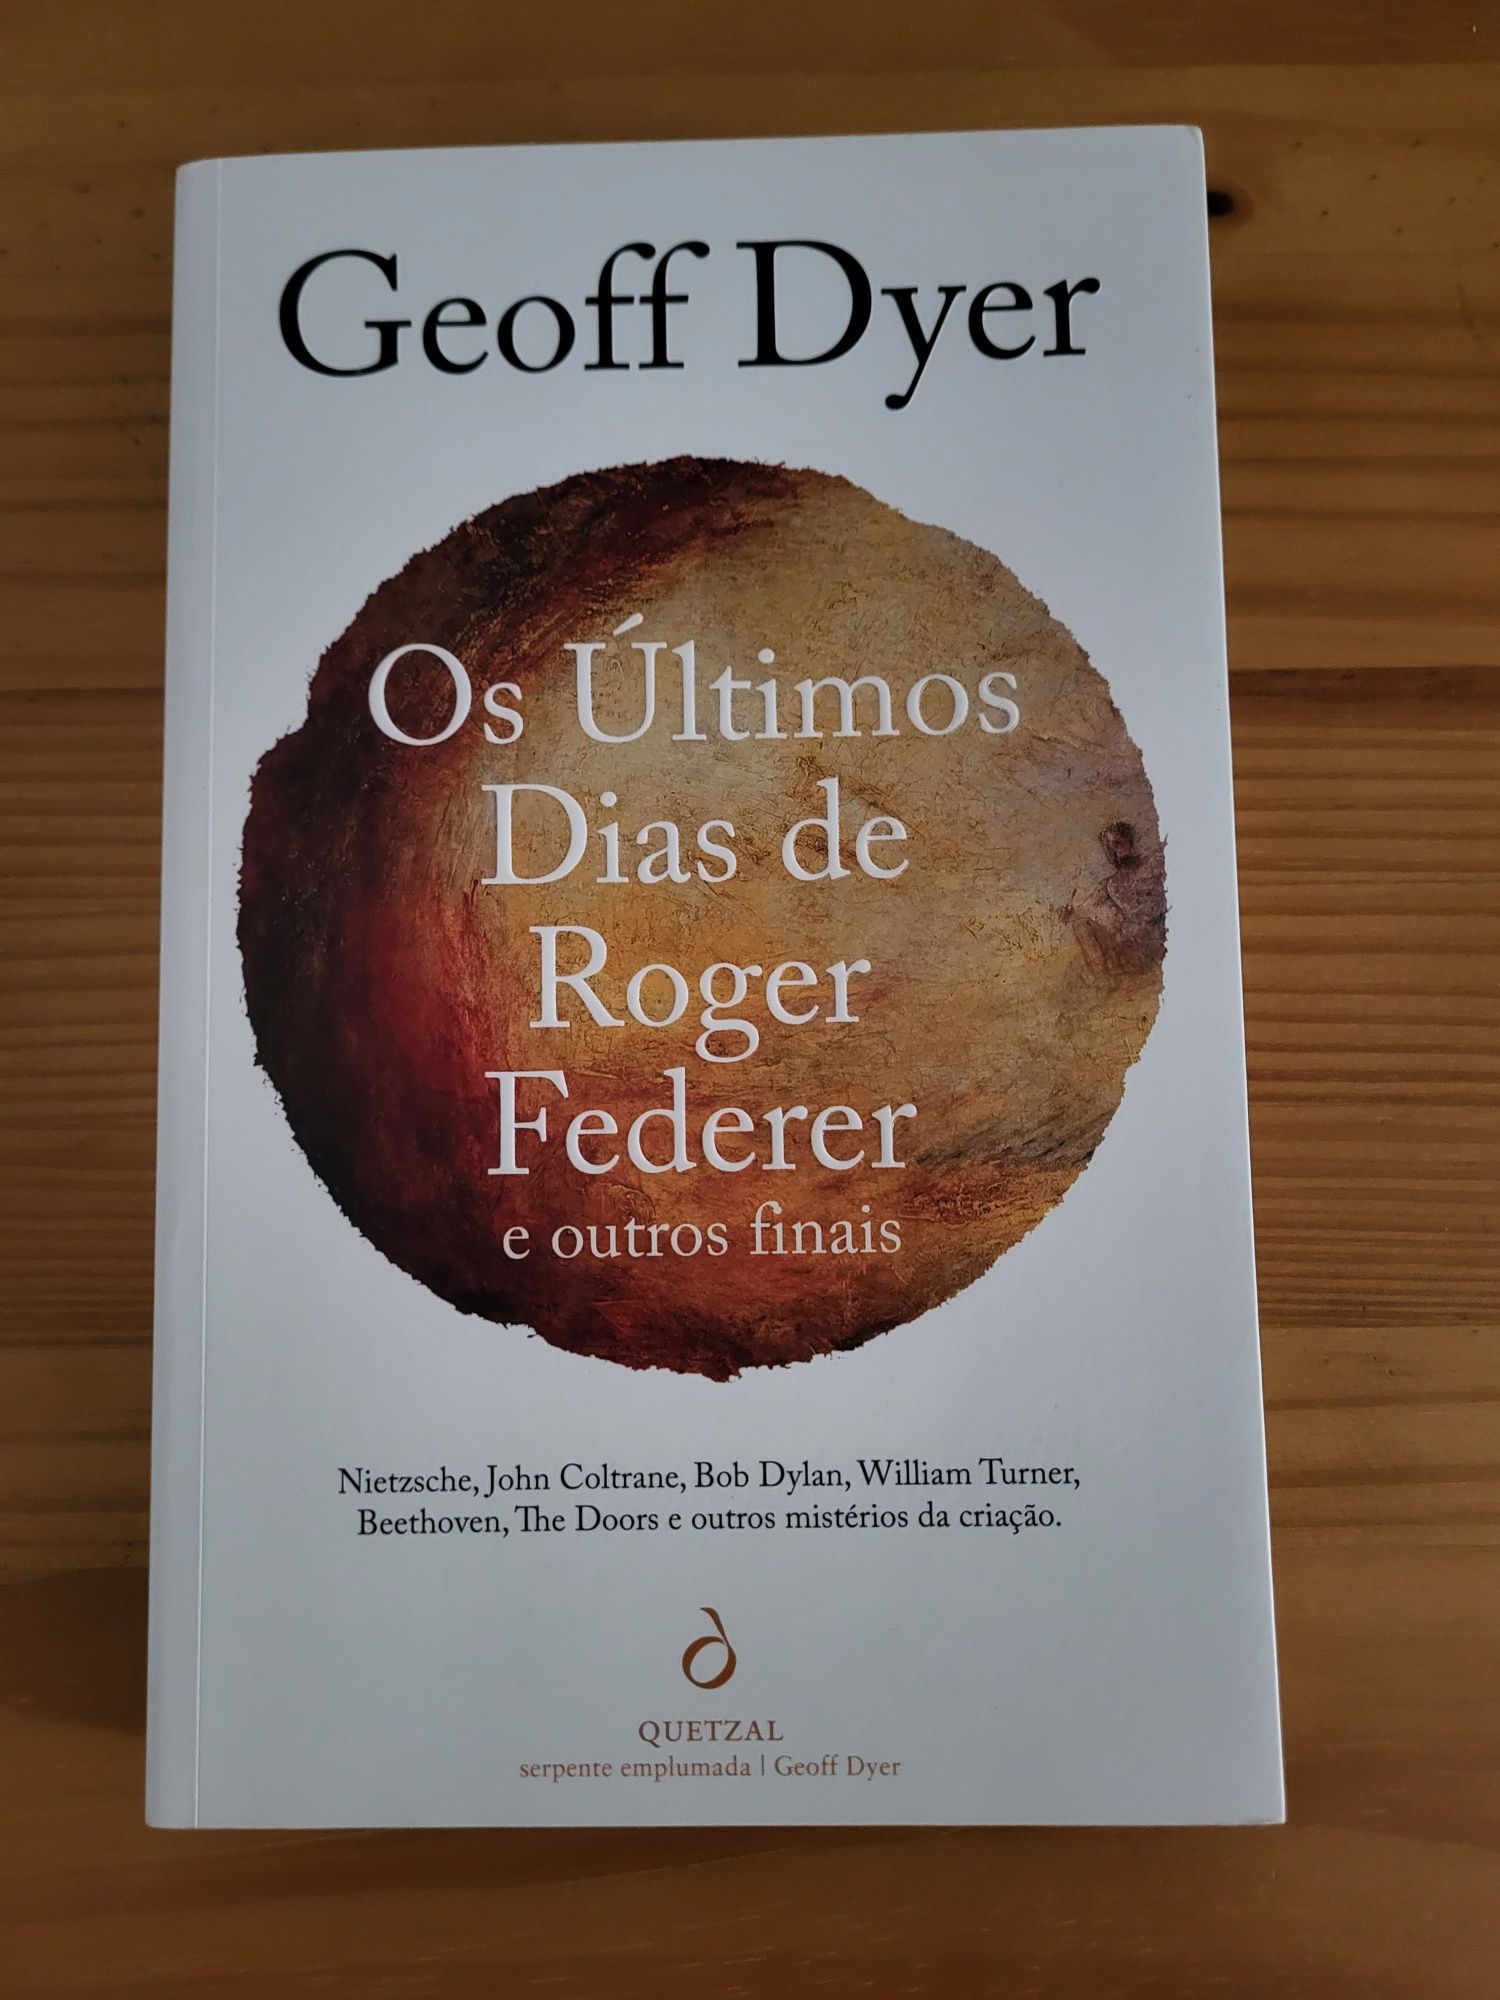 Livro "Os Últimos Dias de Roger Federer e Outros Finais"